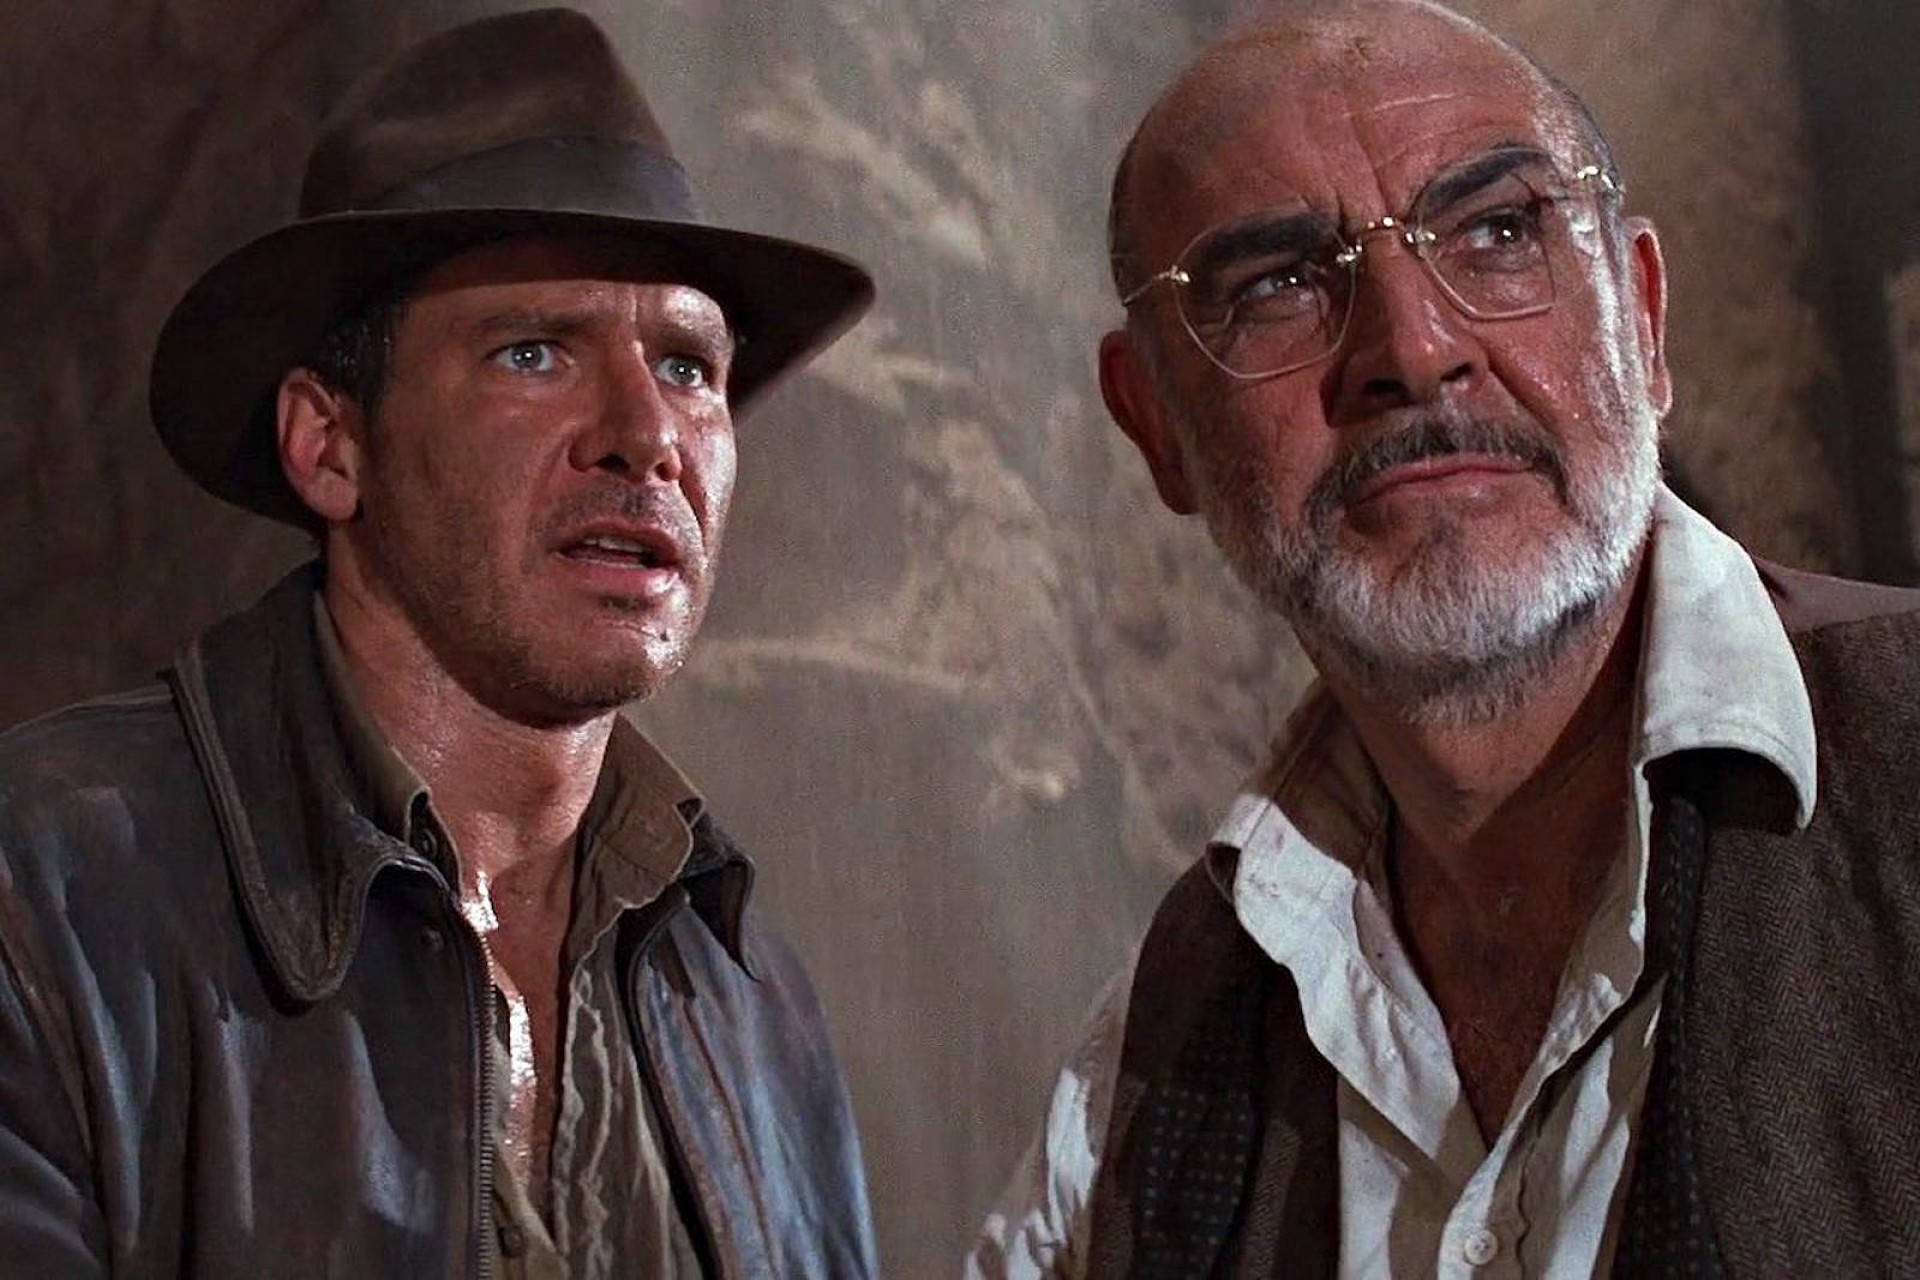 Indiana Jones: com quinto filme, chega a hora de dar adeus ao aventureiro, Vida & Arte